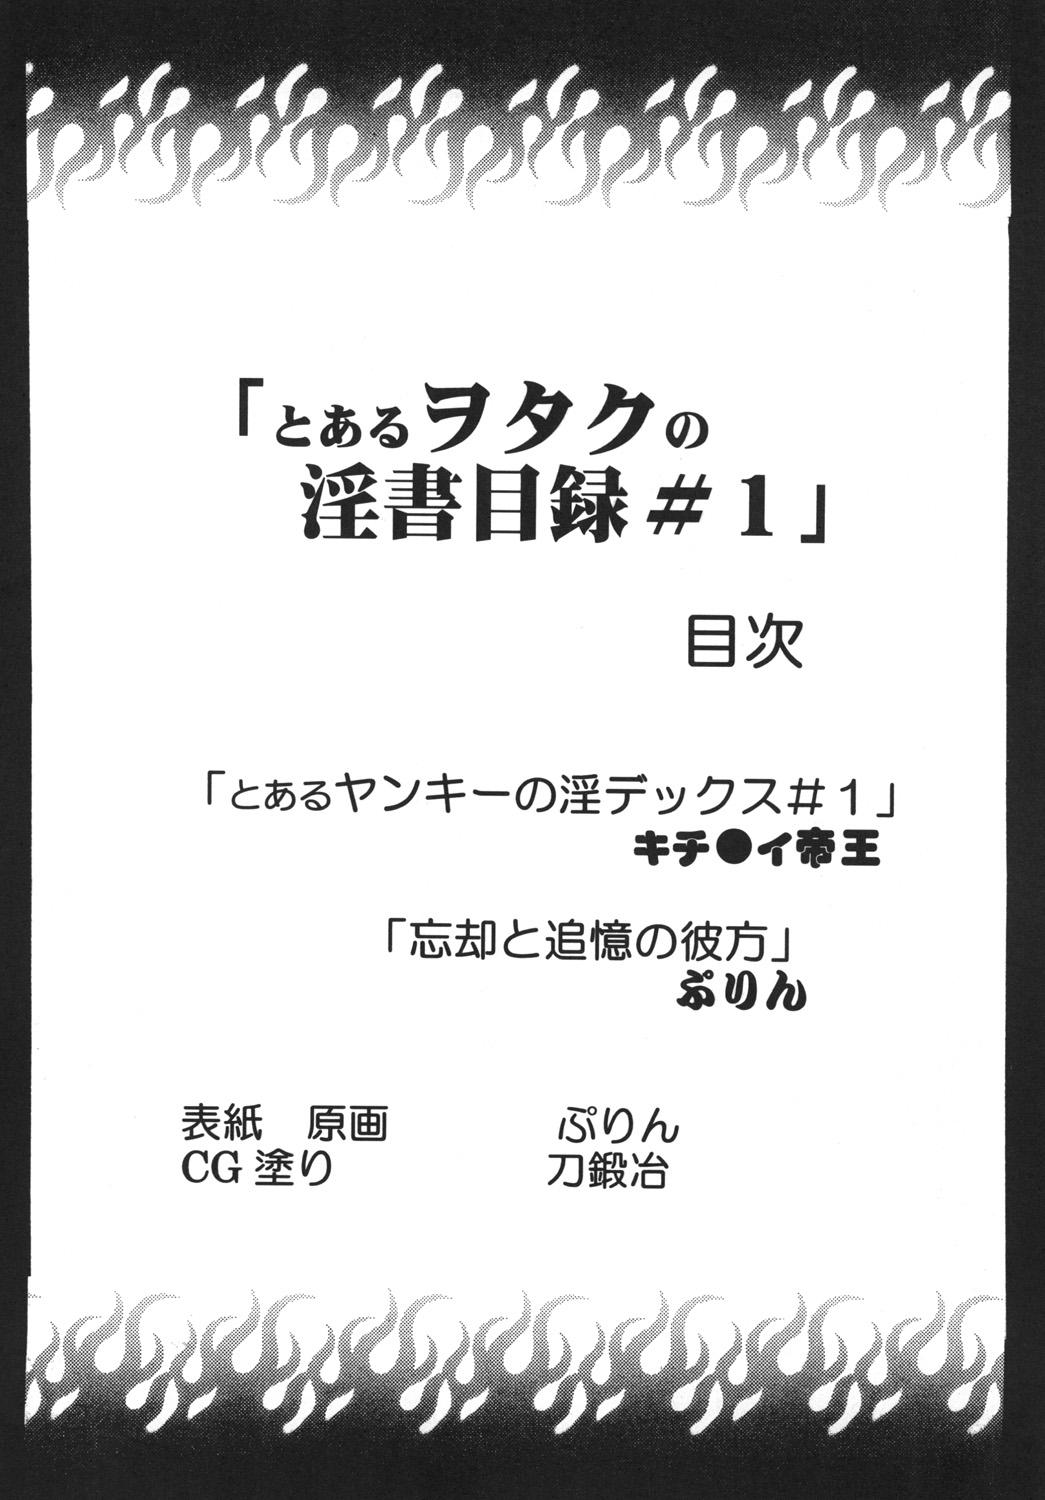 Toaru Otaku no Index #1 2